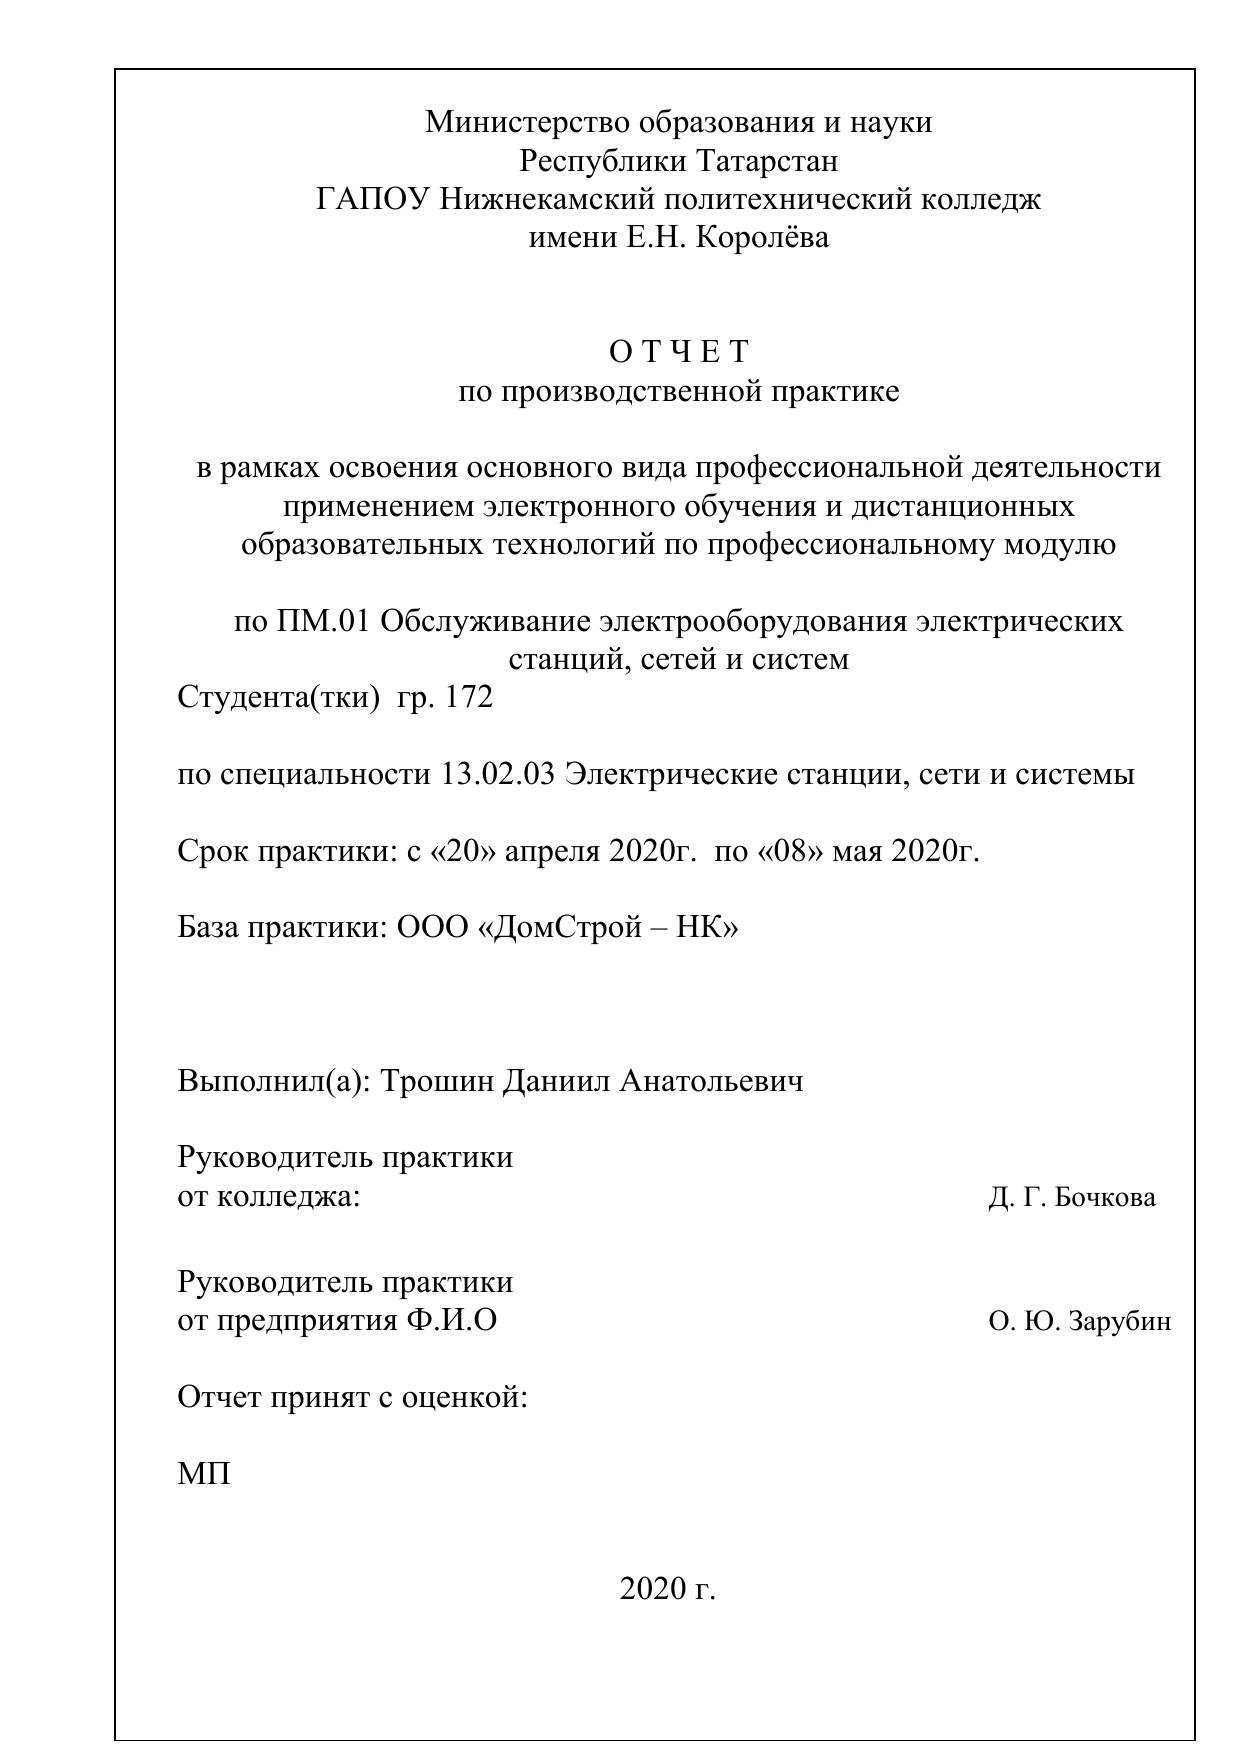 Реферат: Отчет по практике на кабельном заводе Кавказкабель